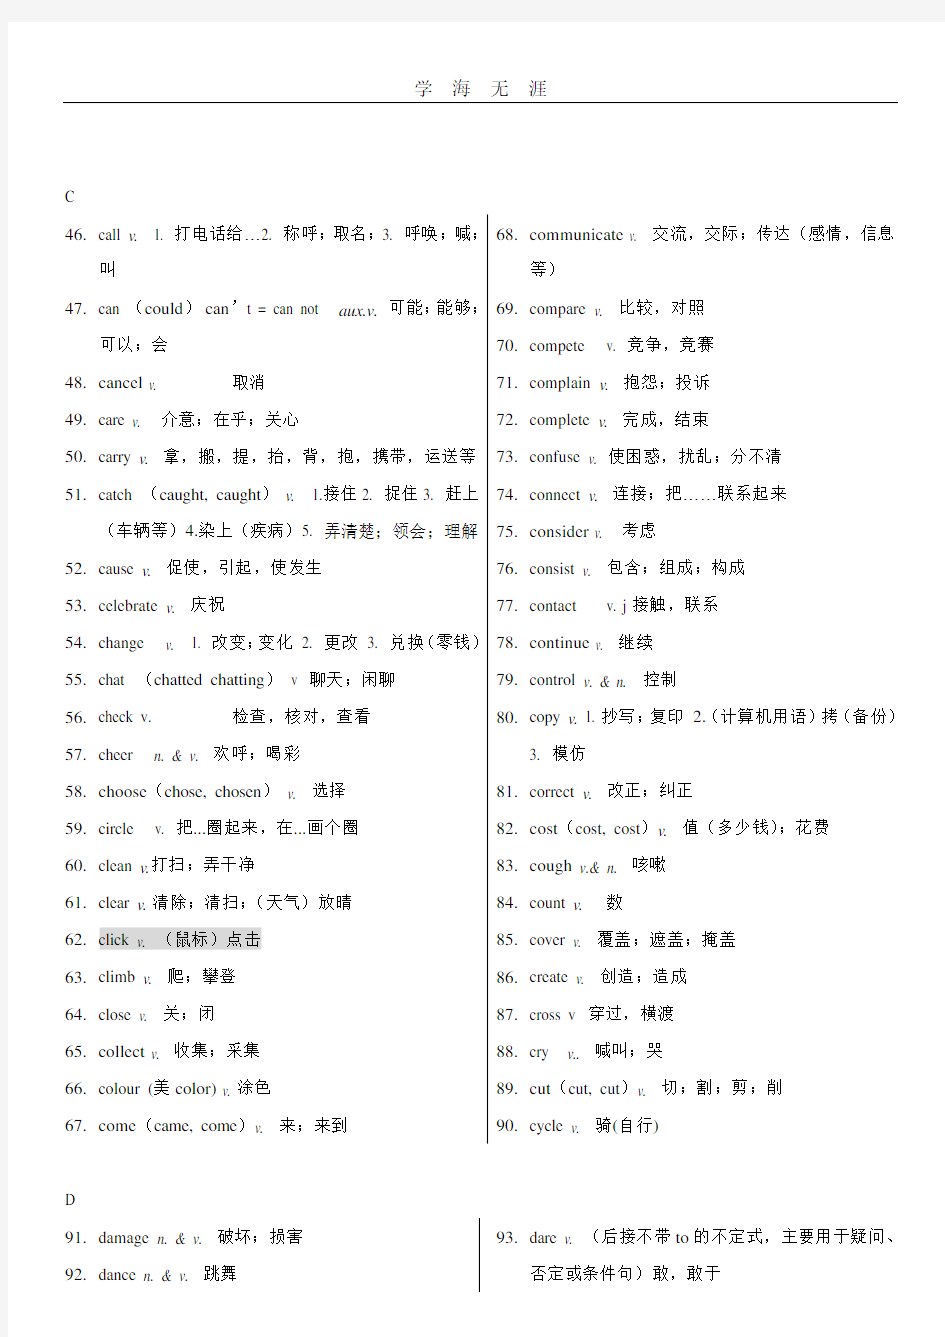 上海中考英语考纲词汇分类表(动词).pdf